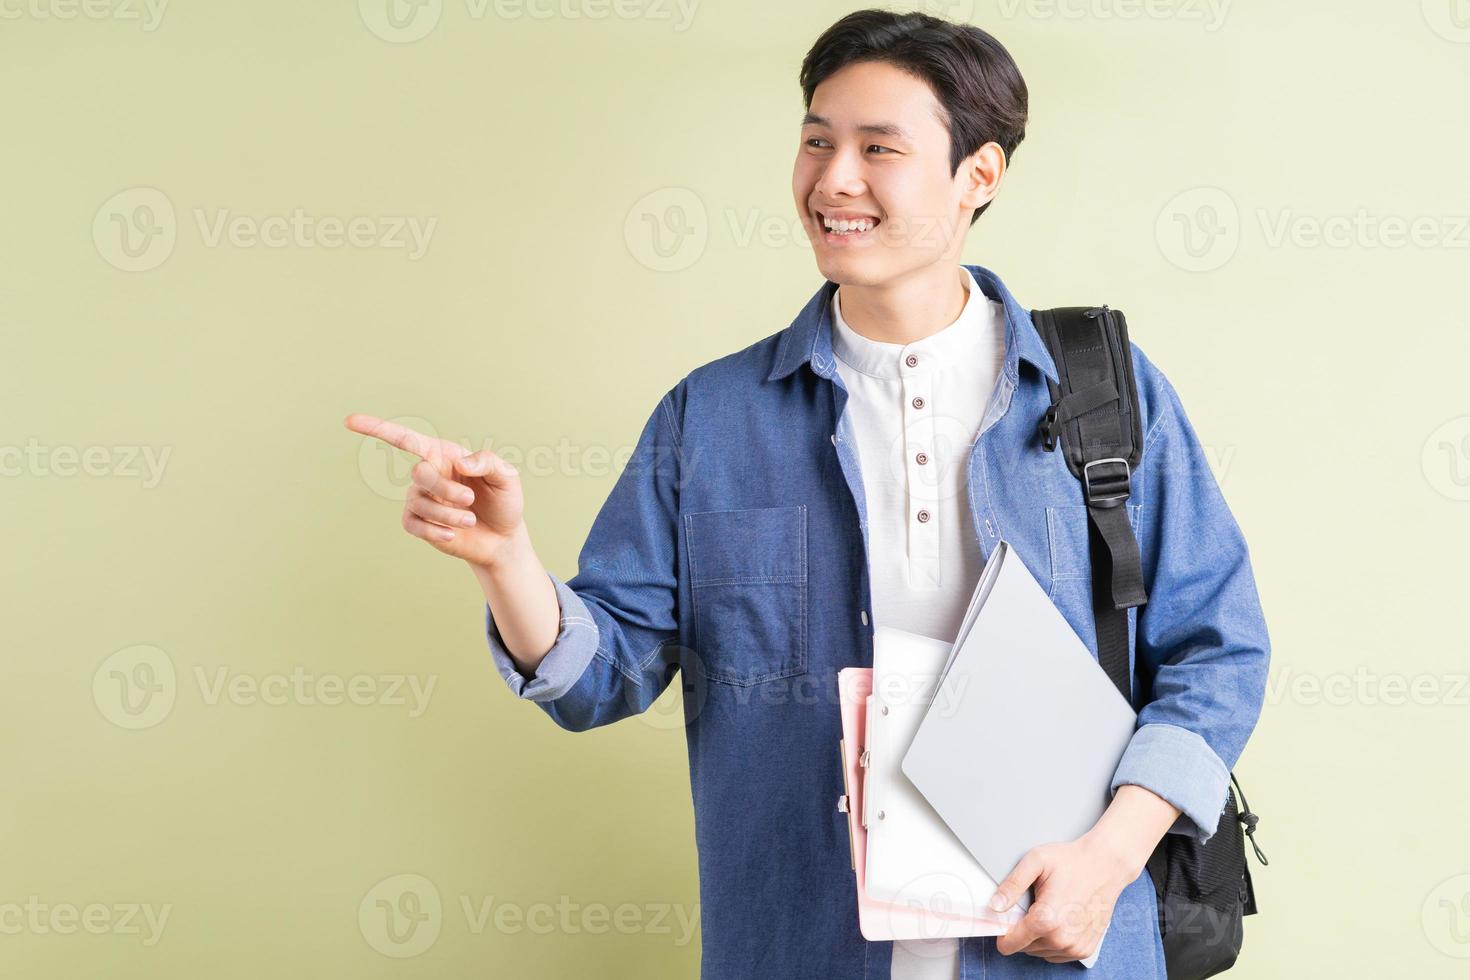 une photo d'un bel étudiant asiatique faisant remarquer avec son doigt